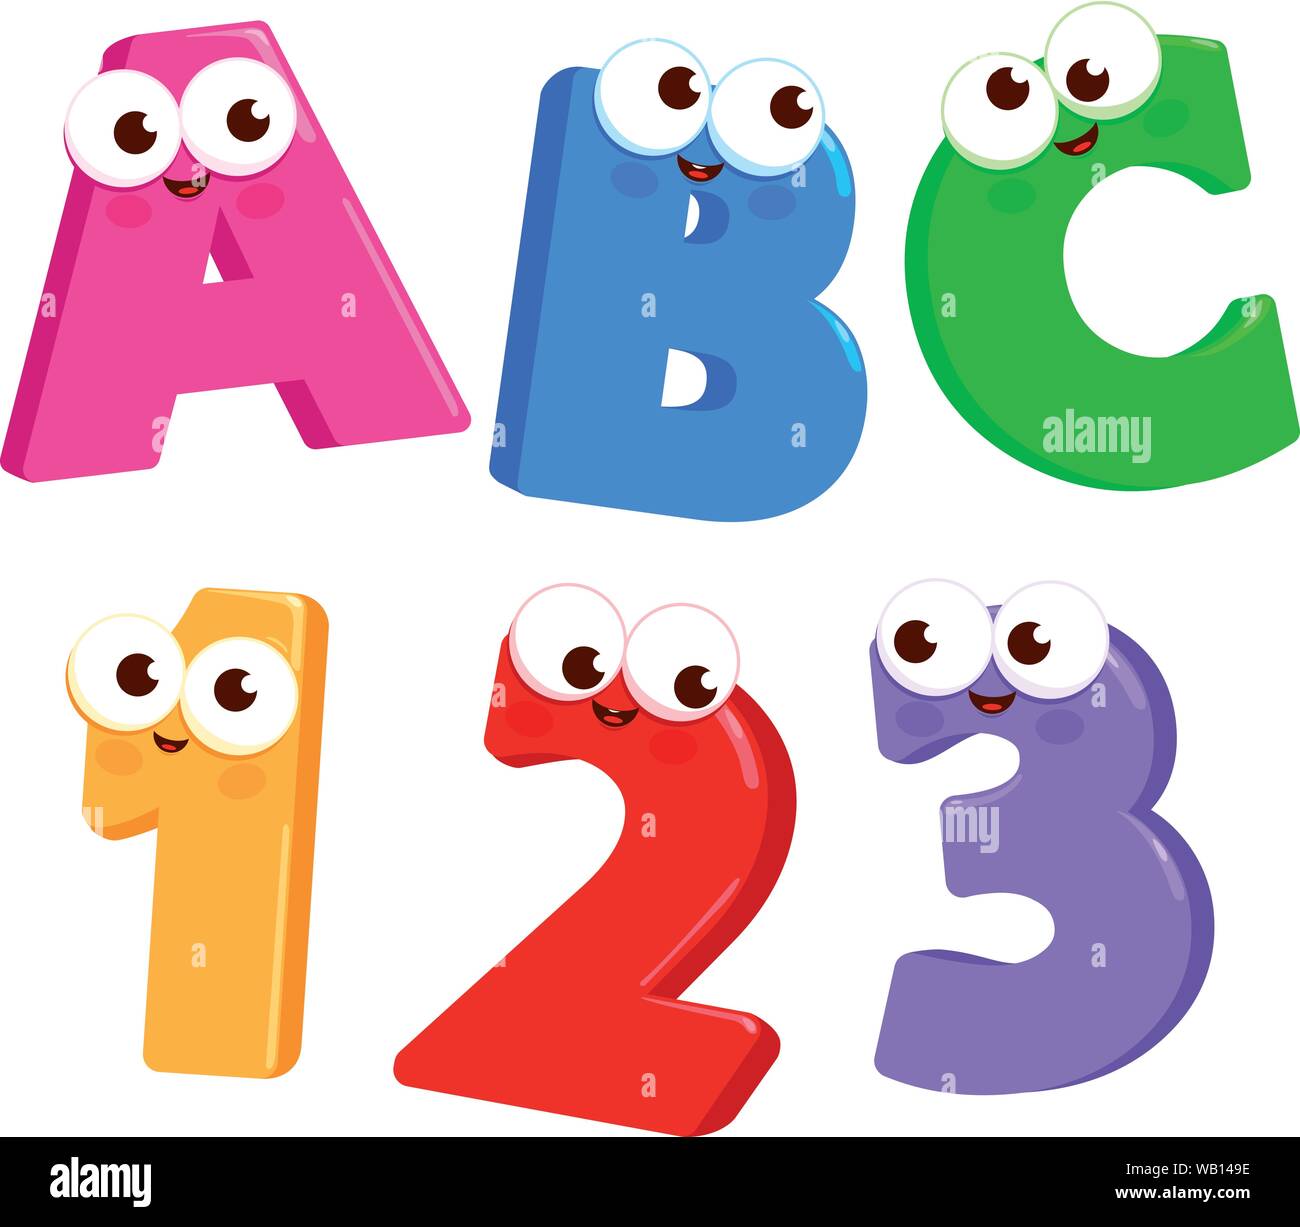 Cartoon Buchstaben ABC und zahlen 123 mit netten und lustigen Gesichter